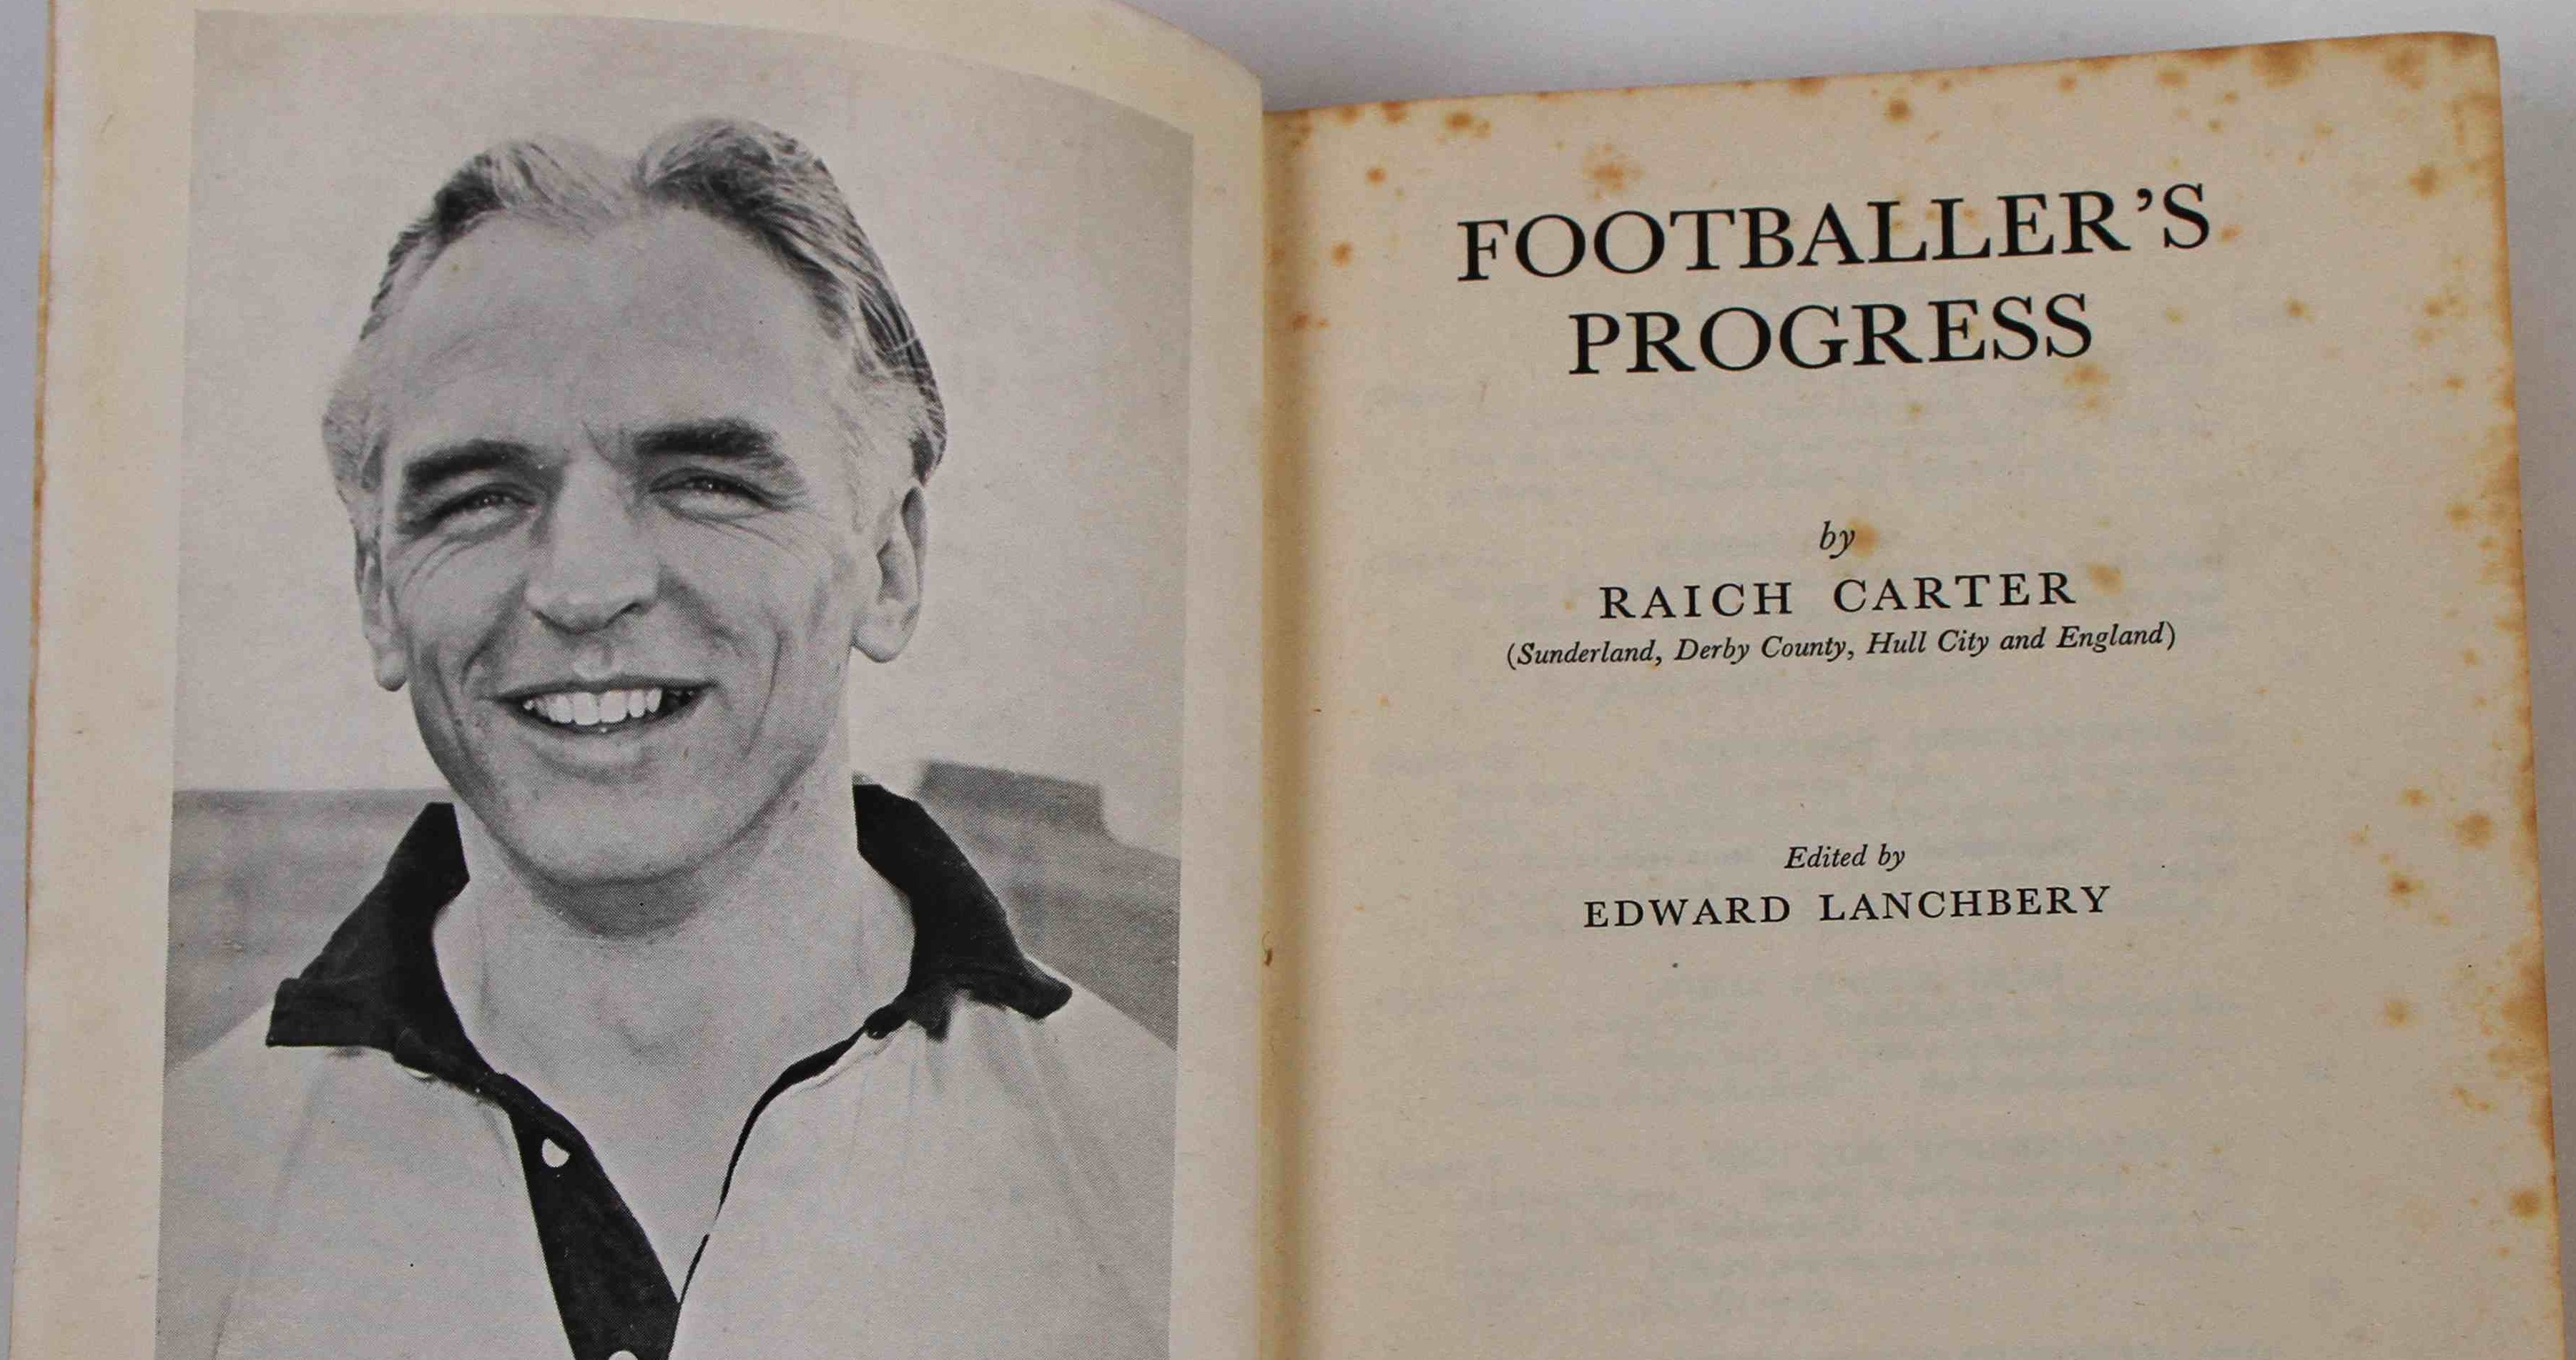 Raich Carter's 1950 book 'Footballer's Progress'